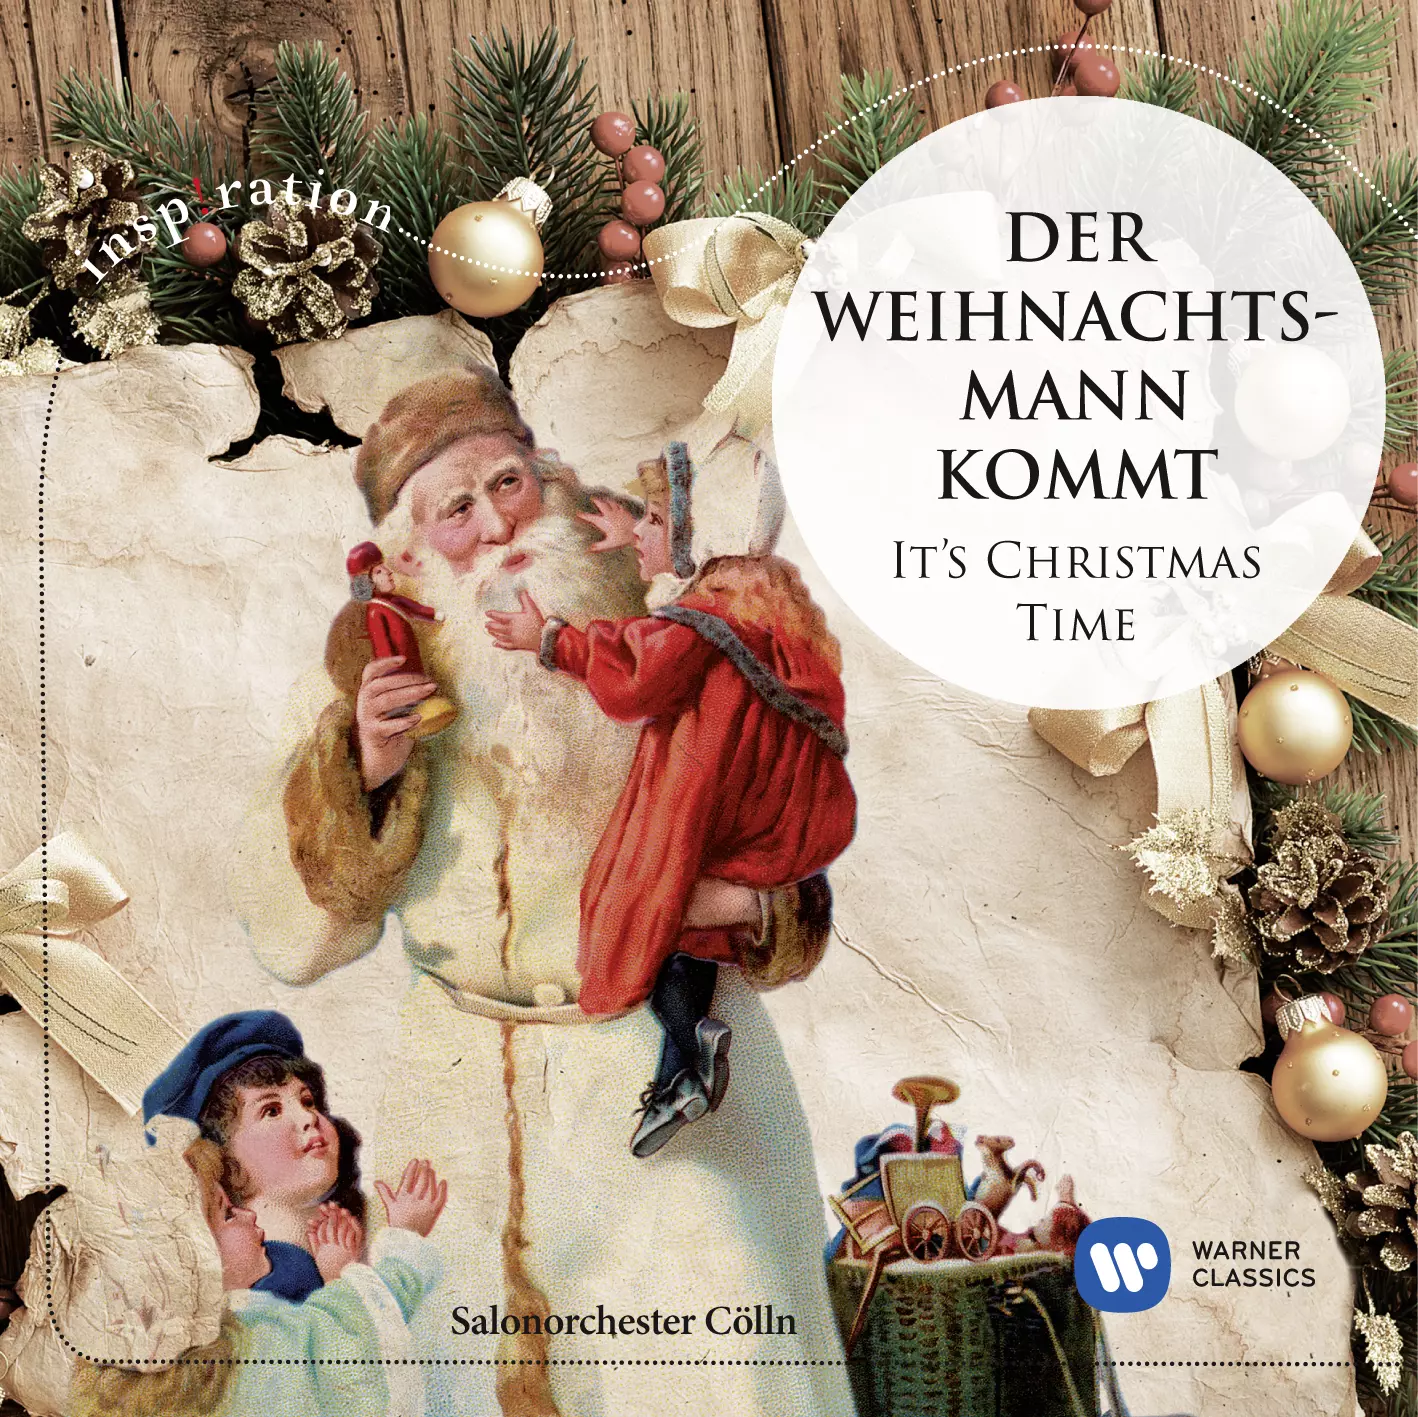 Der Weihnachtsmann kommt - It's Christmas Time